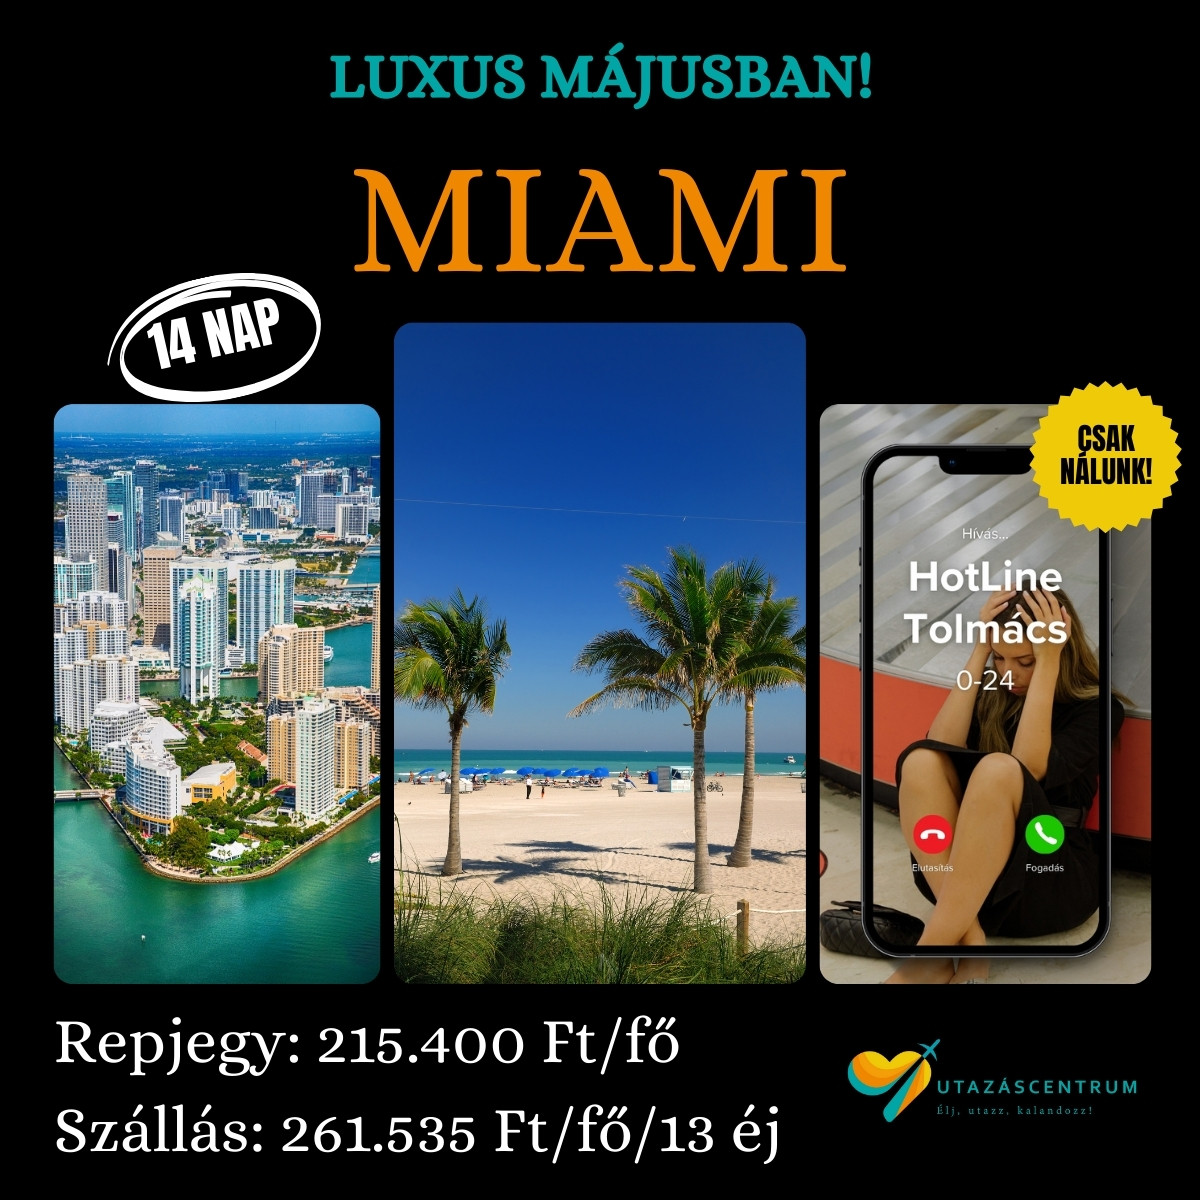 Miami utazás Florida látnivalók utazási tipp programok nyaralás luxusutazás városnézés Miami szállás Miami repjegy UtazásCentrum blog